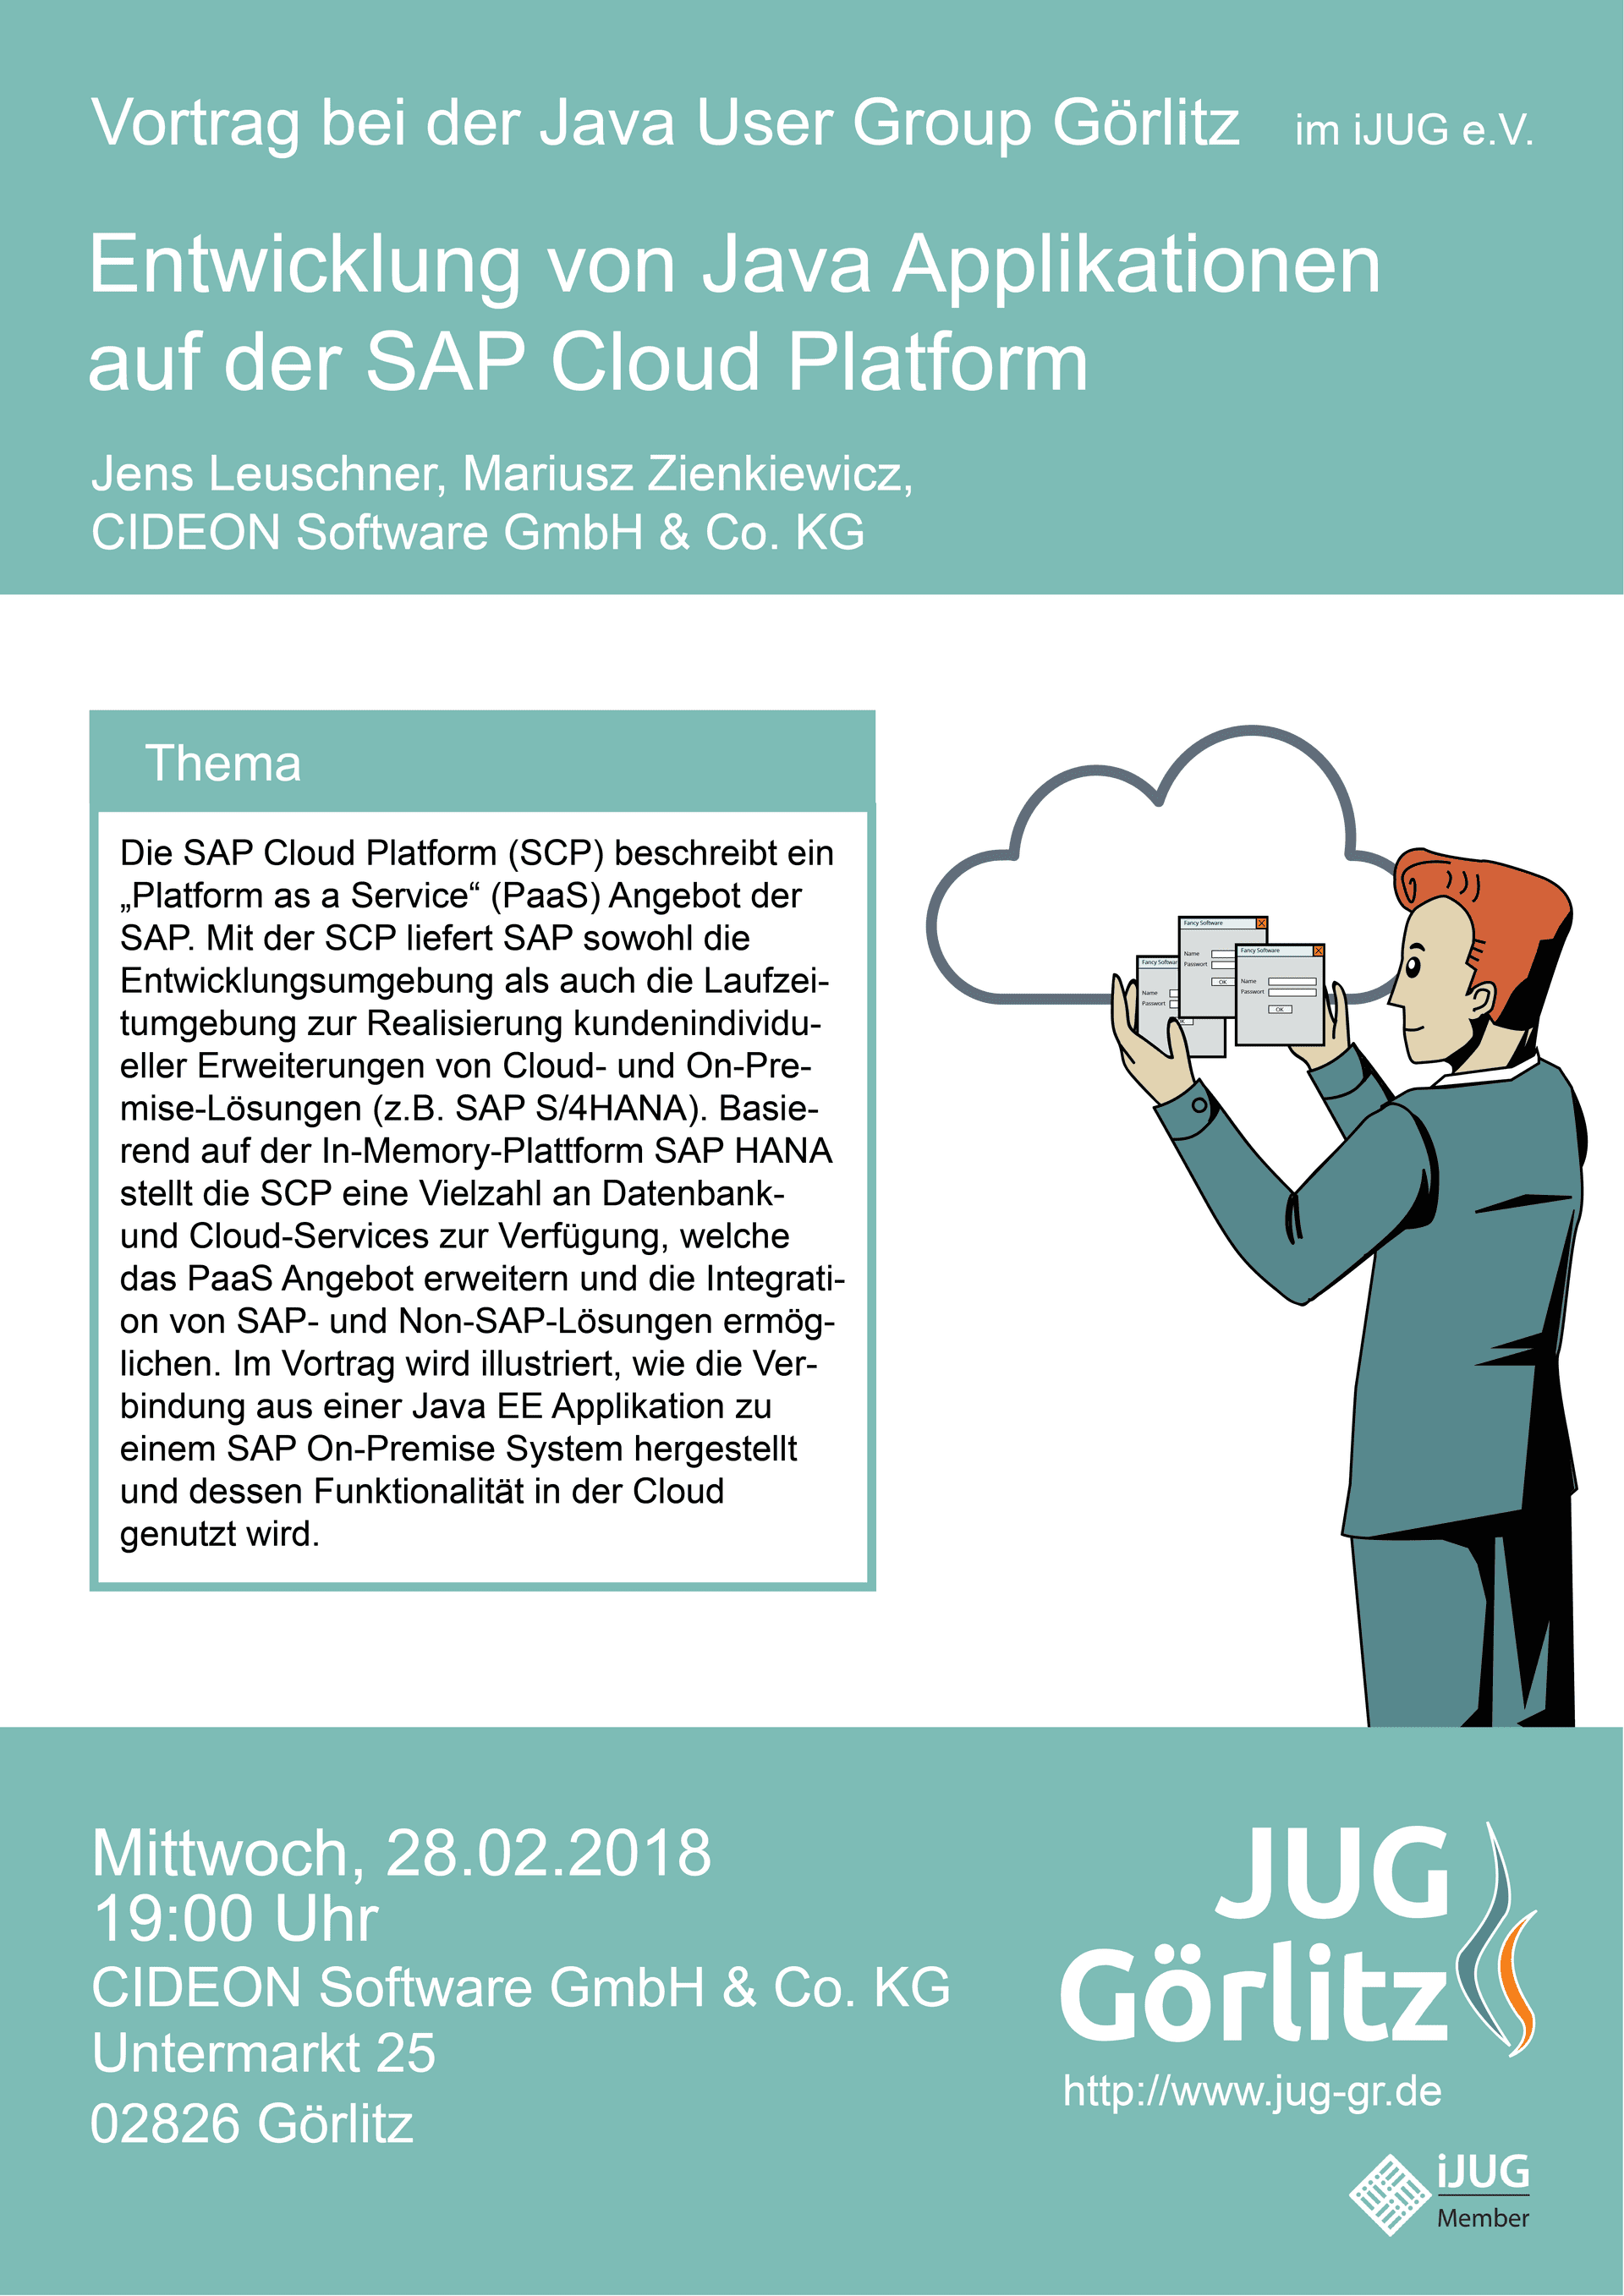 Poster: Jürgen hält einige kleine Programm-Fenster in der Hand. Er hebt die Programme in eine Wolke, die sich hinter ihm befindet. Die Wolke sieht aus wie das Cloud-Symbol.